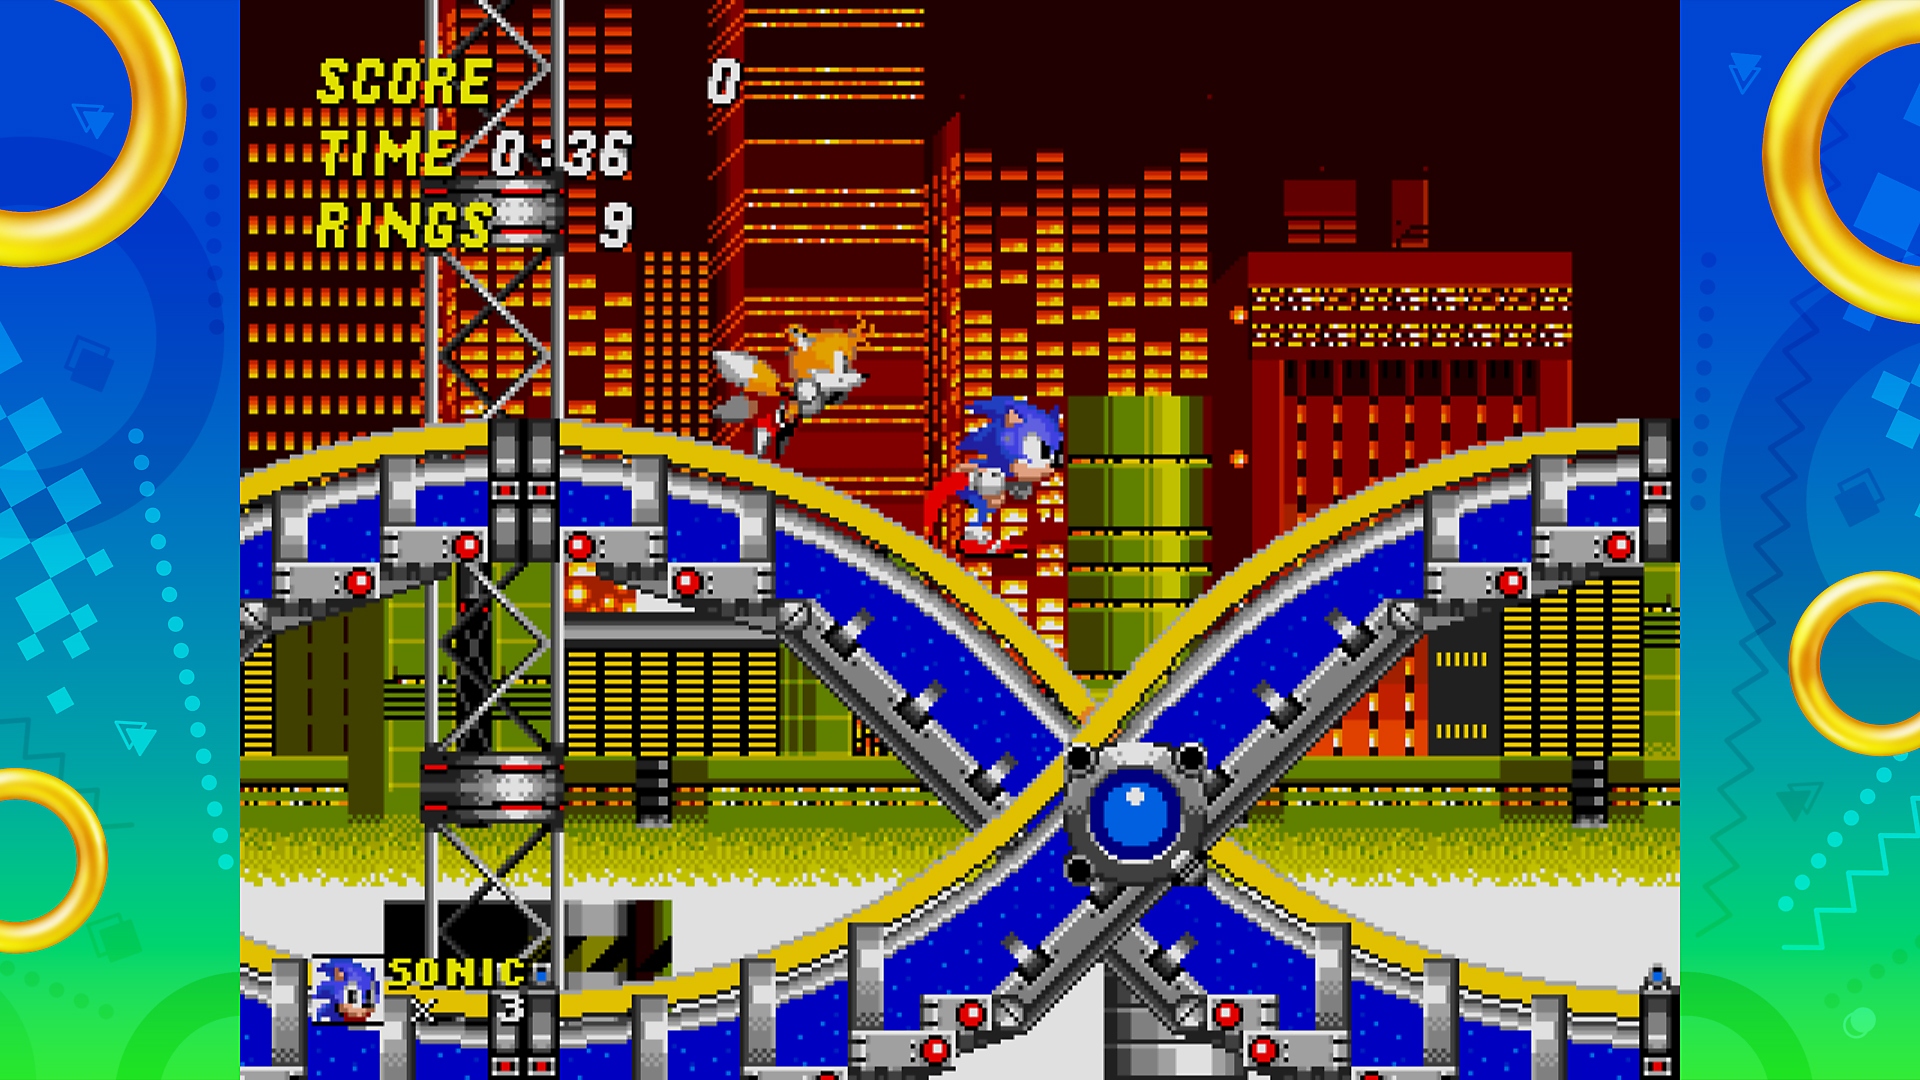 Snimka zaslona iz igre Sonic Origins koja prikazuje Sonica i Tailsa kako trče razinom